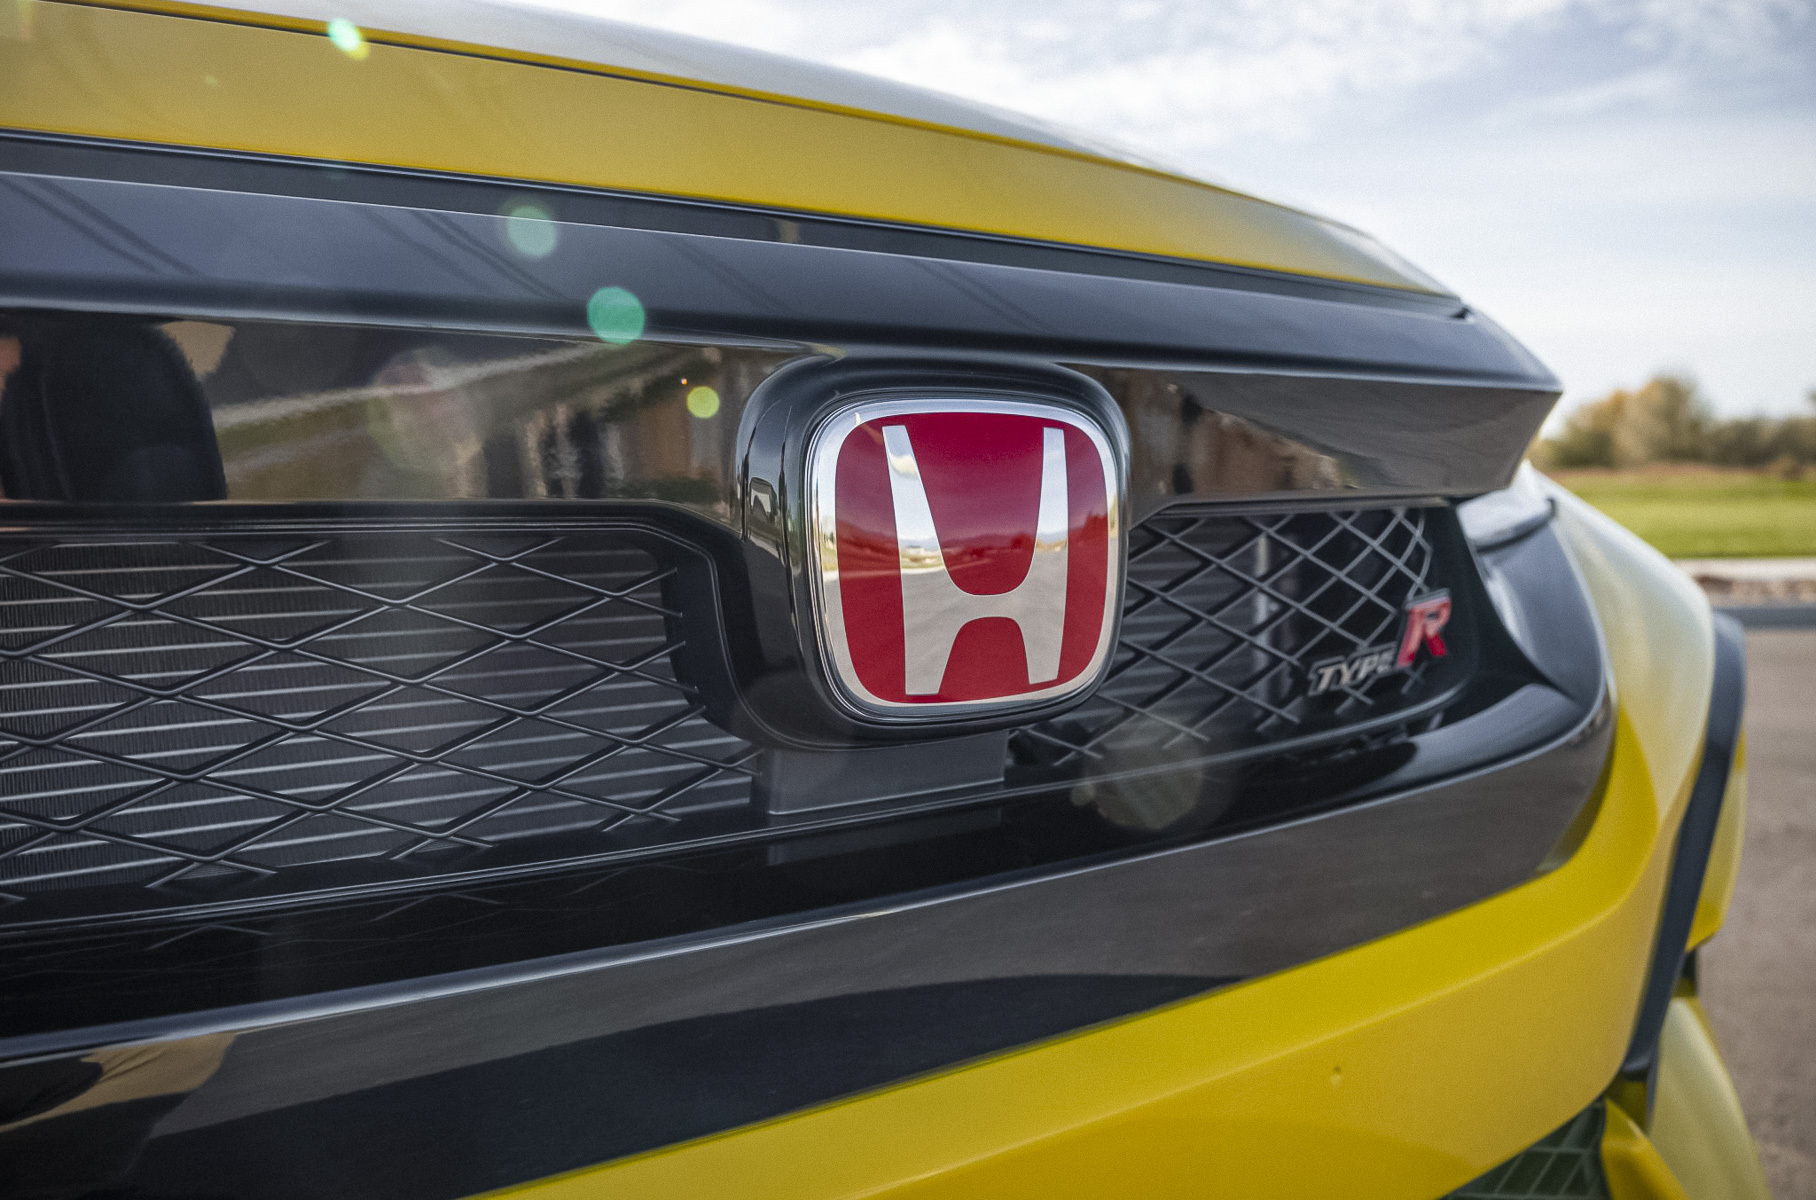 Редкий Honda Civic ушел с молотка за 7,4 миллиона рублей